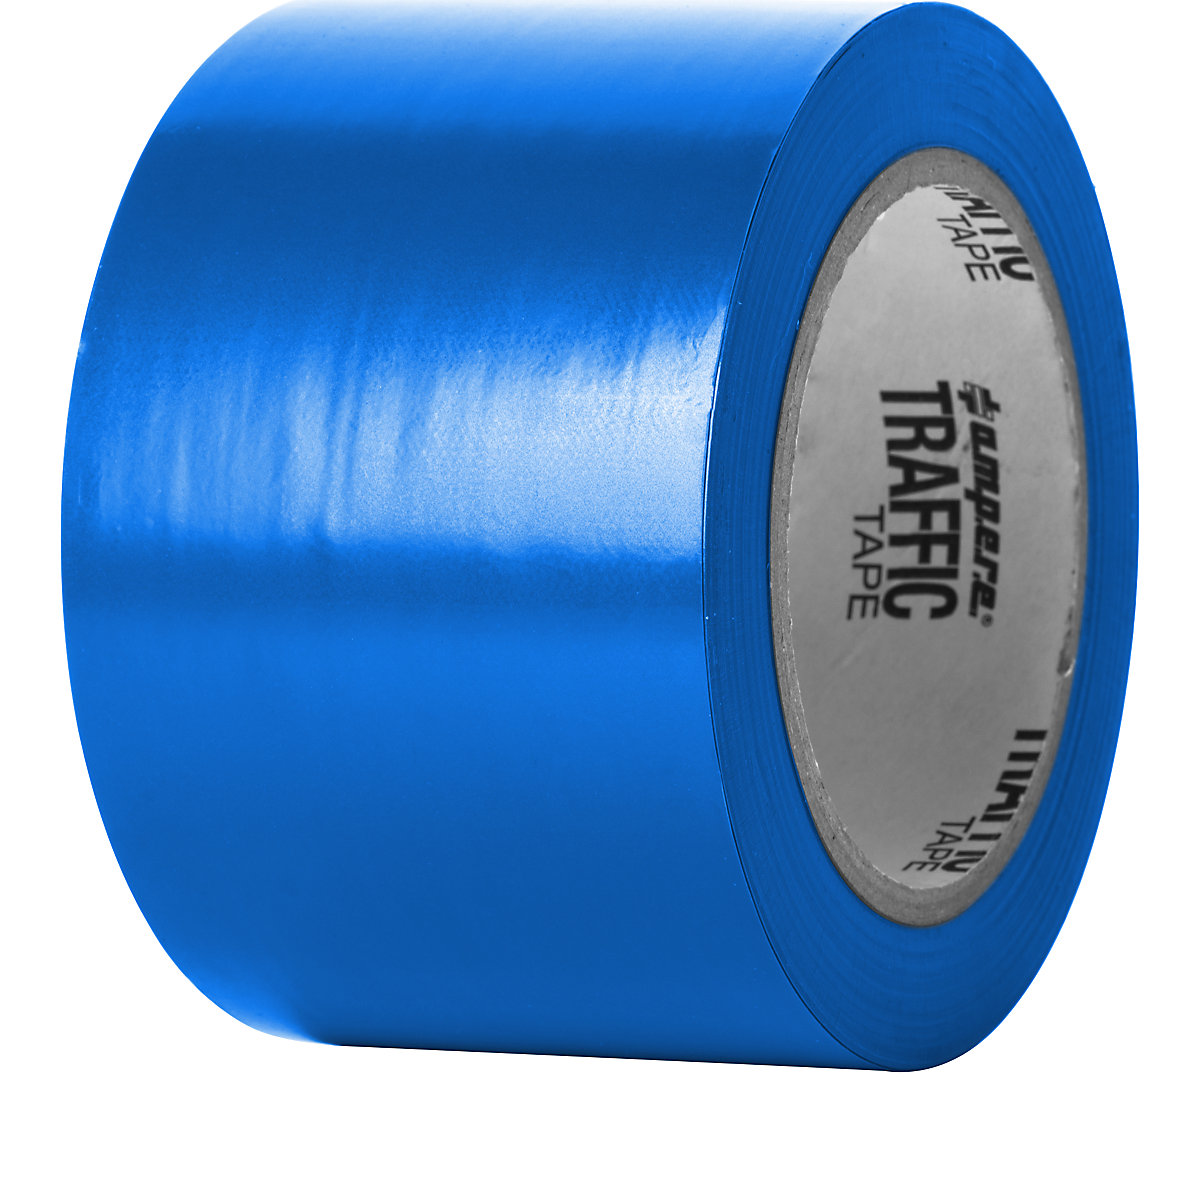 Bodenmarkierungsband a.m.p.e.r.e, Breite 75 mm, blau